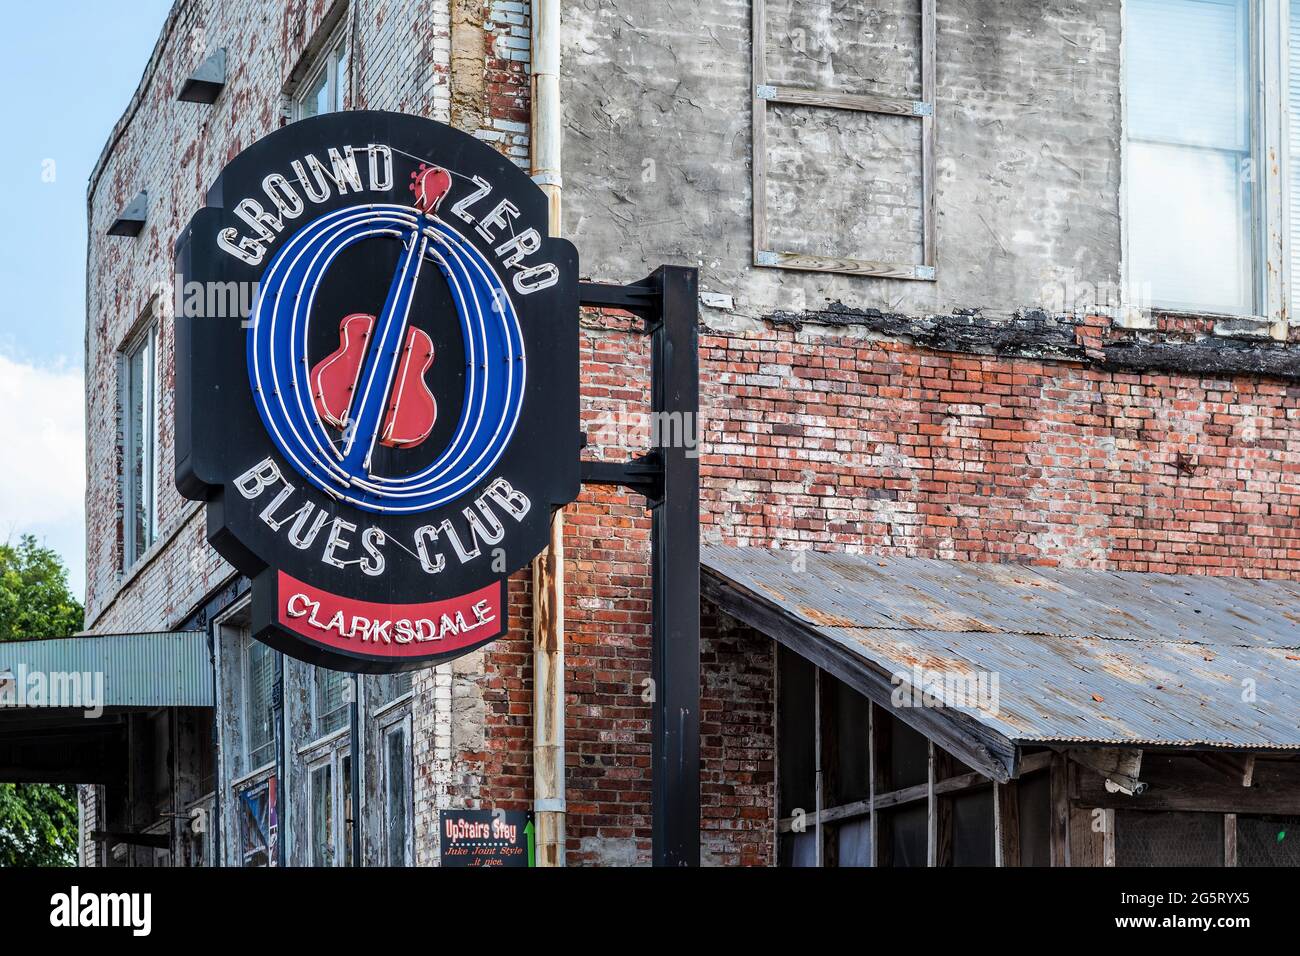 Ground Zero Blues Club à Clarksdale, Mississippi, co-détenue par l'acteur Morgan Freeman, Clarksdale serait le Ground Zero pour le blues. Banque D'Images